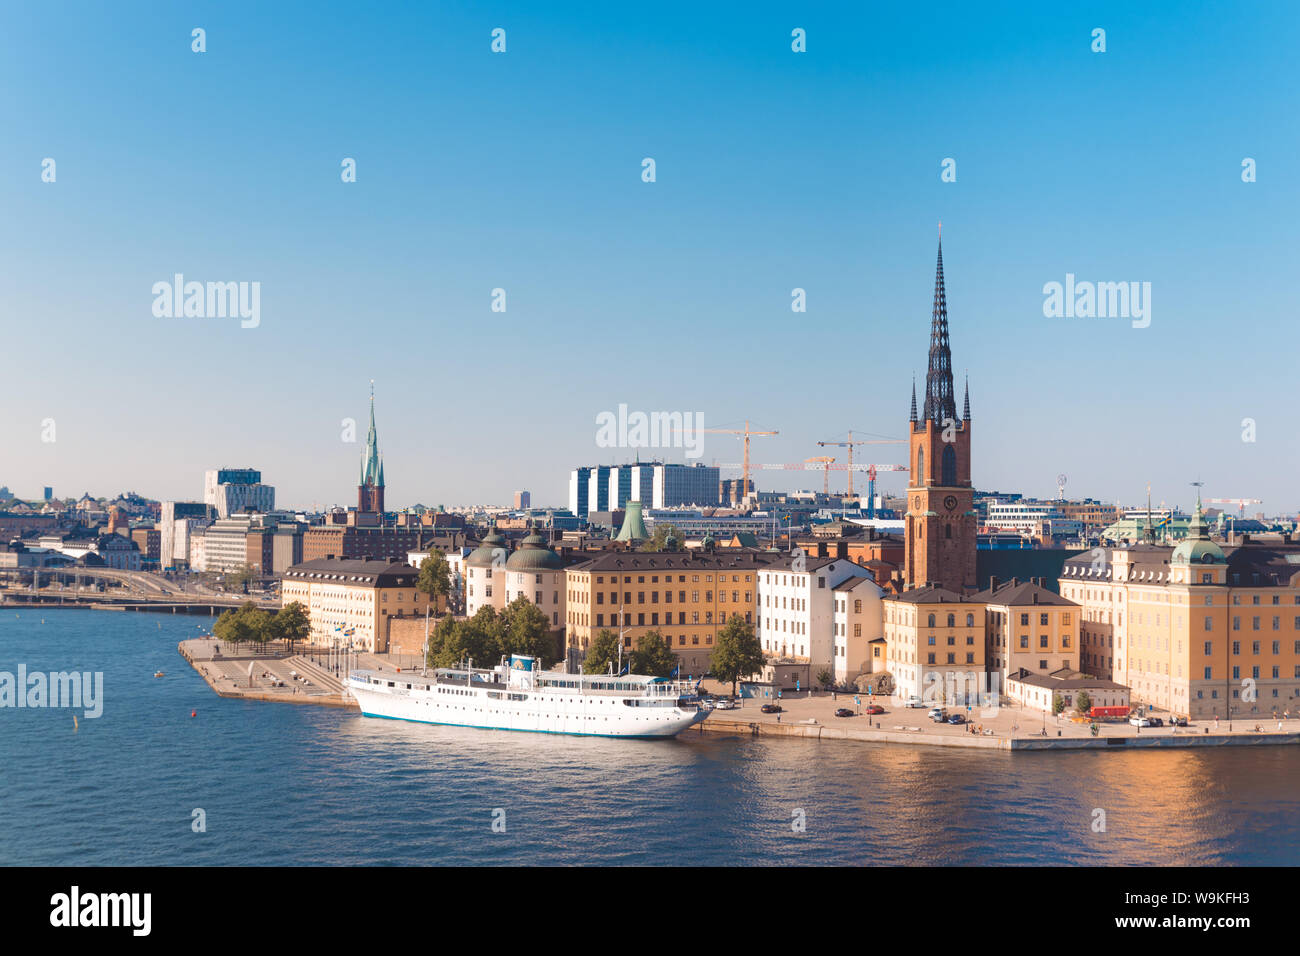 Cityscape immagine dell'architettura del centro storico molo nel quartiere Södermalm di Stoccolma, Svezia Foto Stock